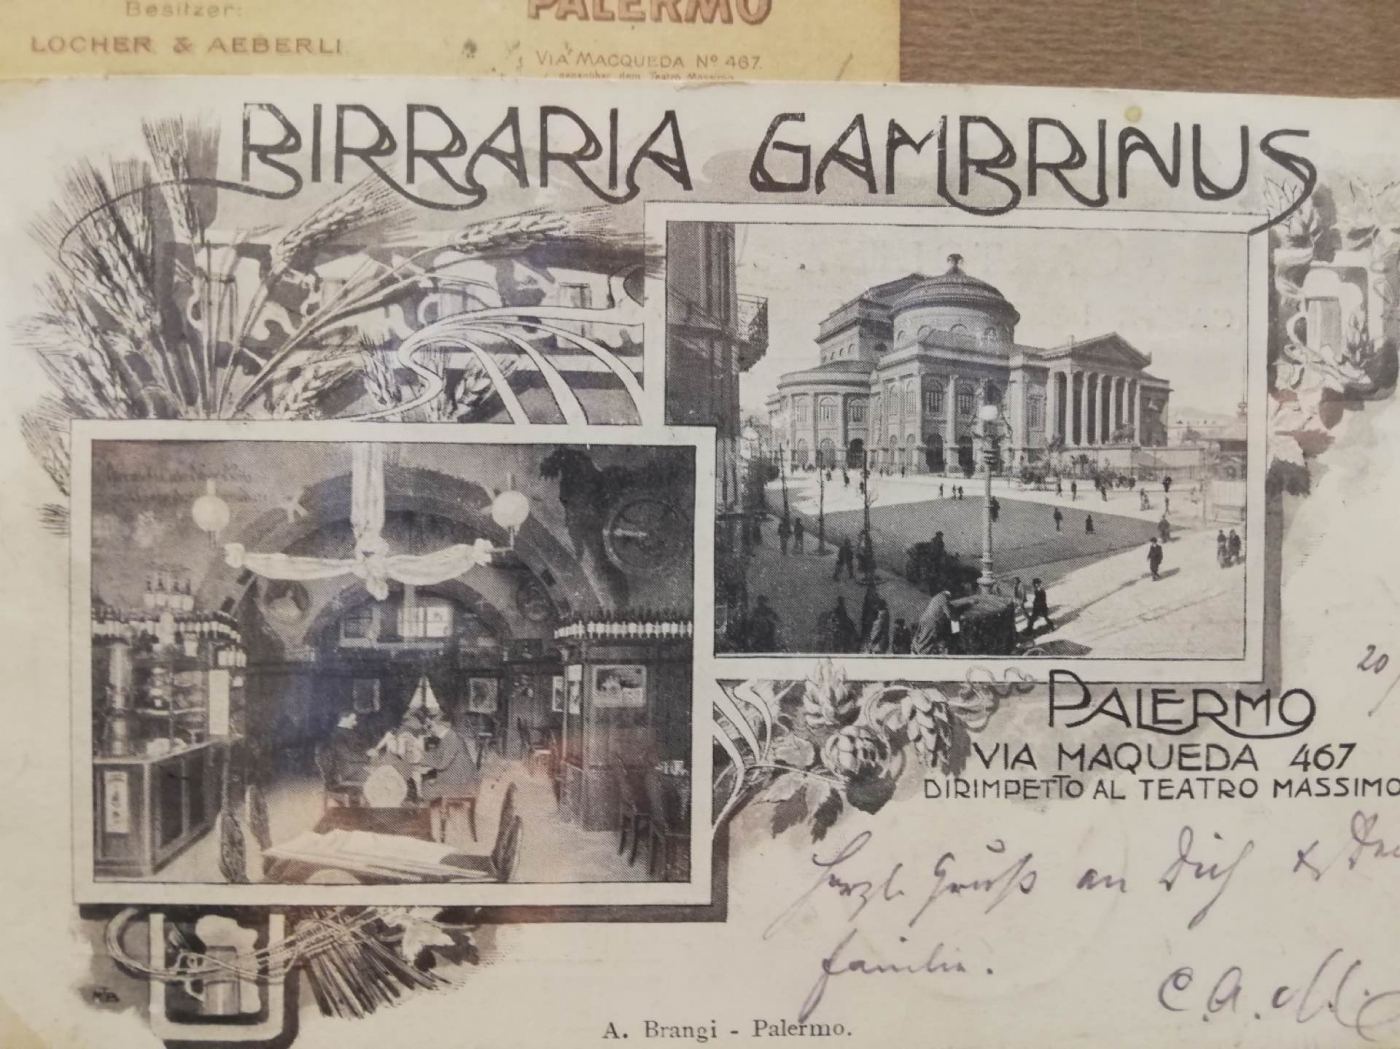 Cartolina della Birraria Gambrinus